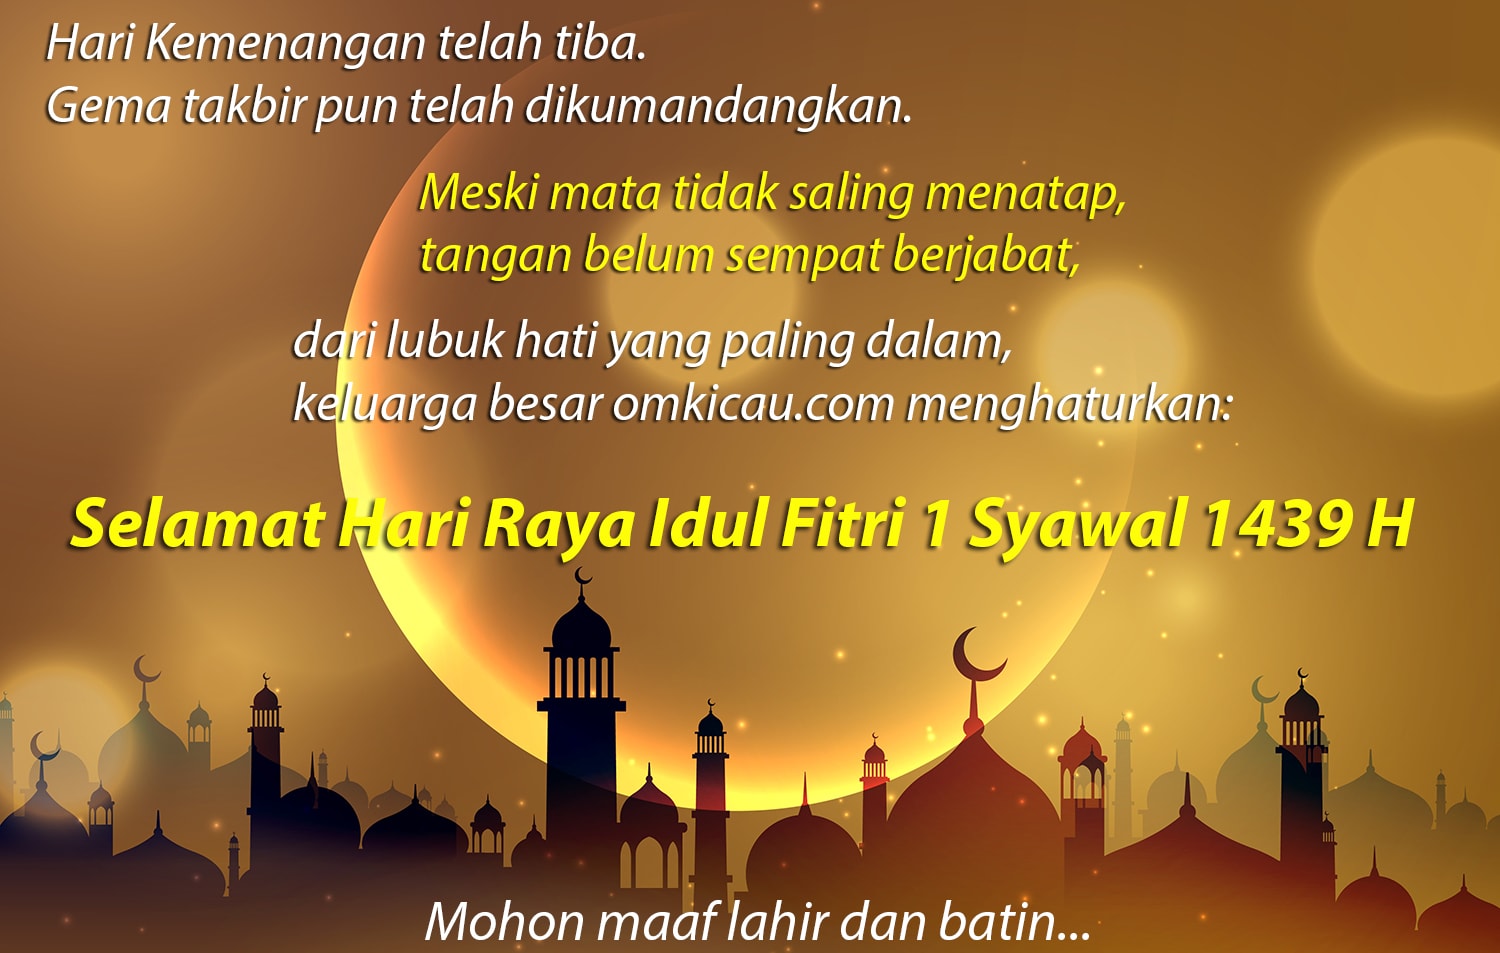 Selamat Hari Raya Idul Fitri 1 Syawal 1439 Hijriyah  OM KICAU